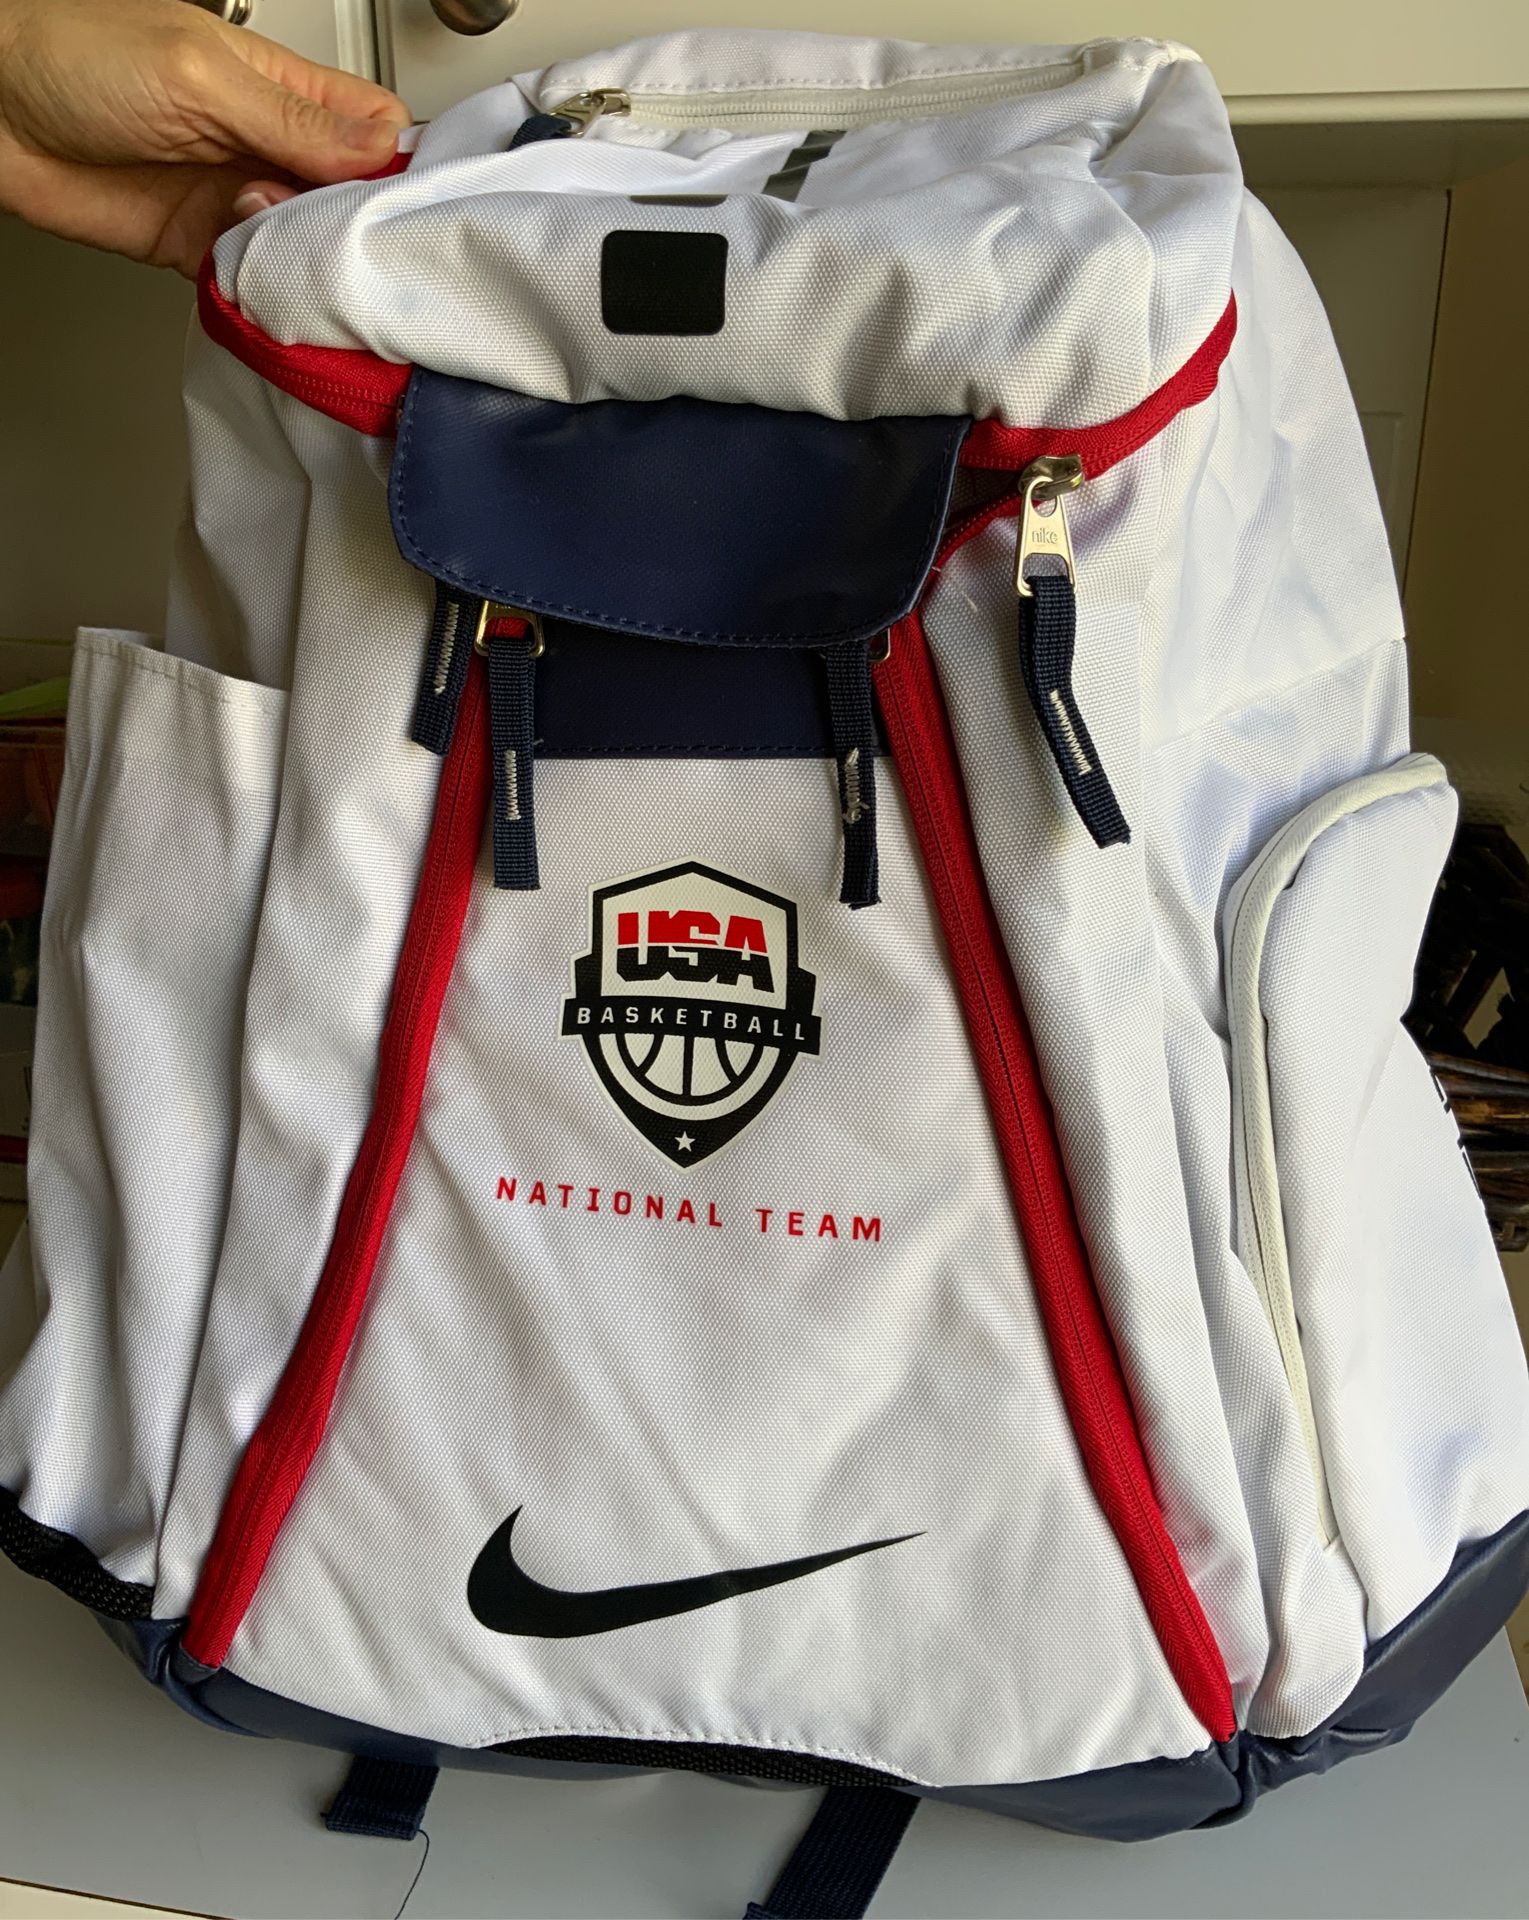 Nike ELITE PRO OLIMPIC USA Backpack New